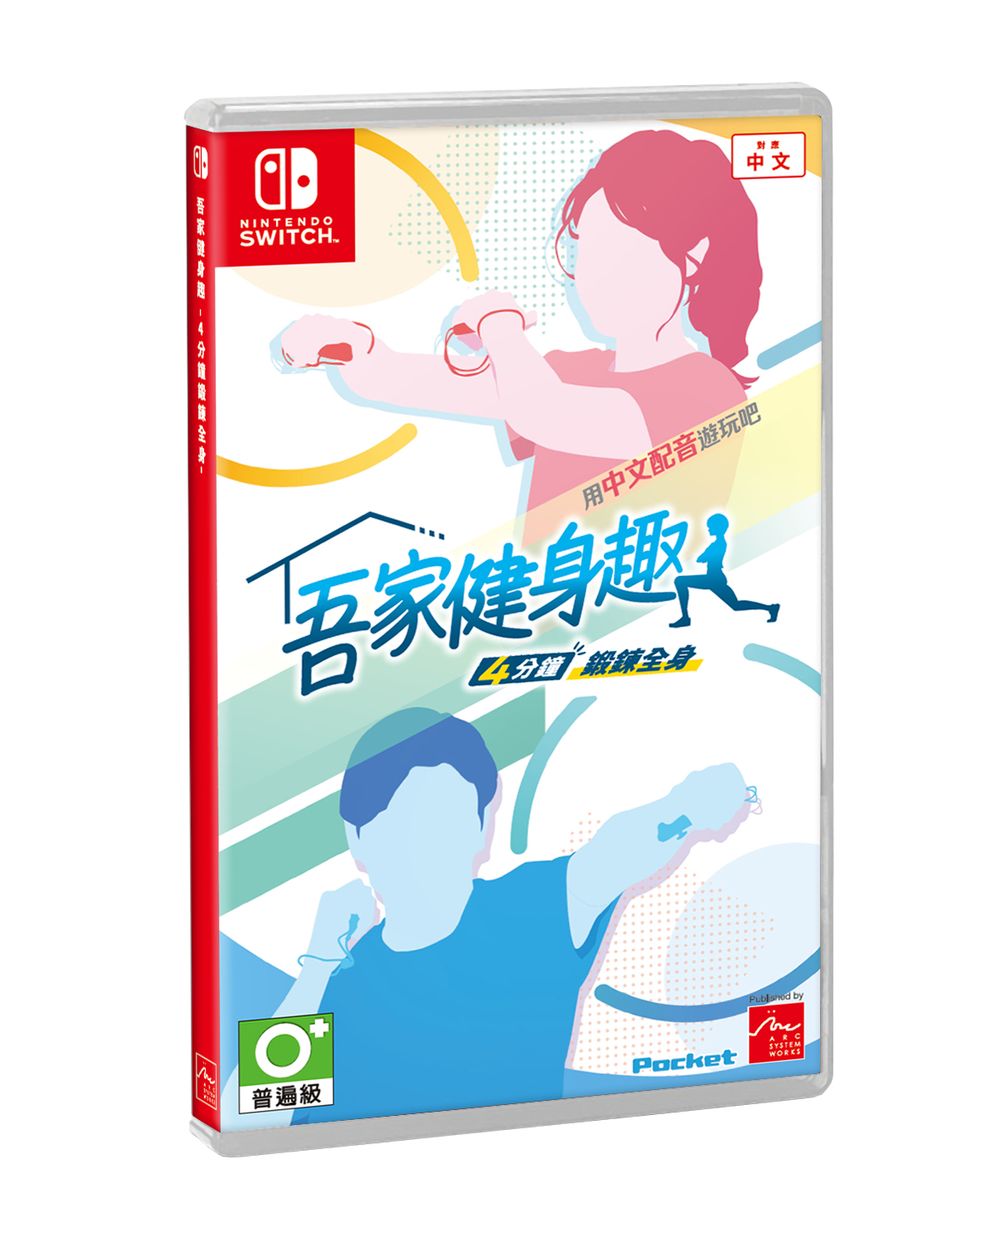 Switch 间歇训练健身游戏《吾家健身趣》中文配音版确定 12 月上市 公开预购特典资讯